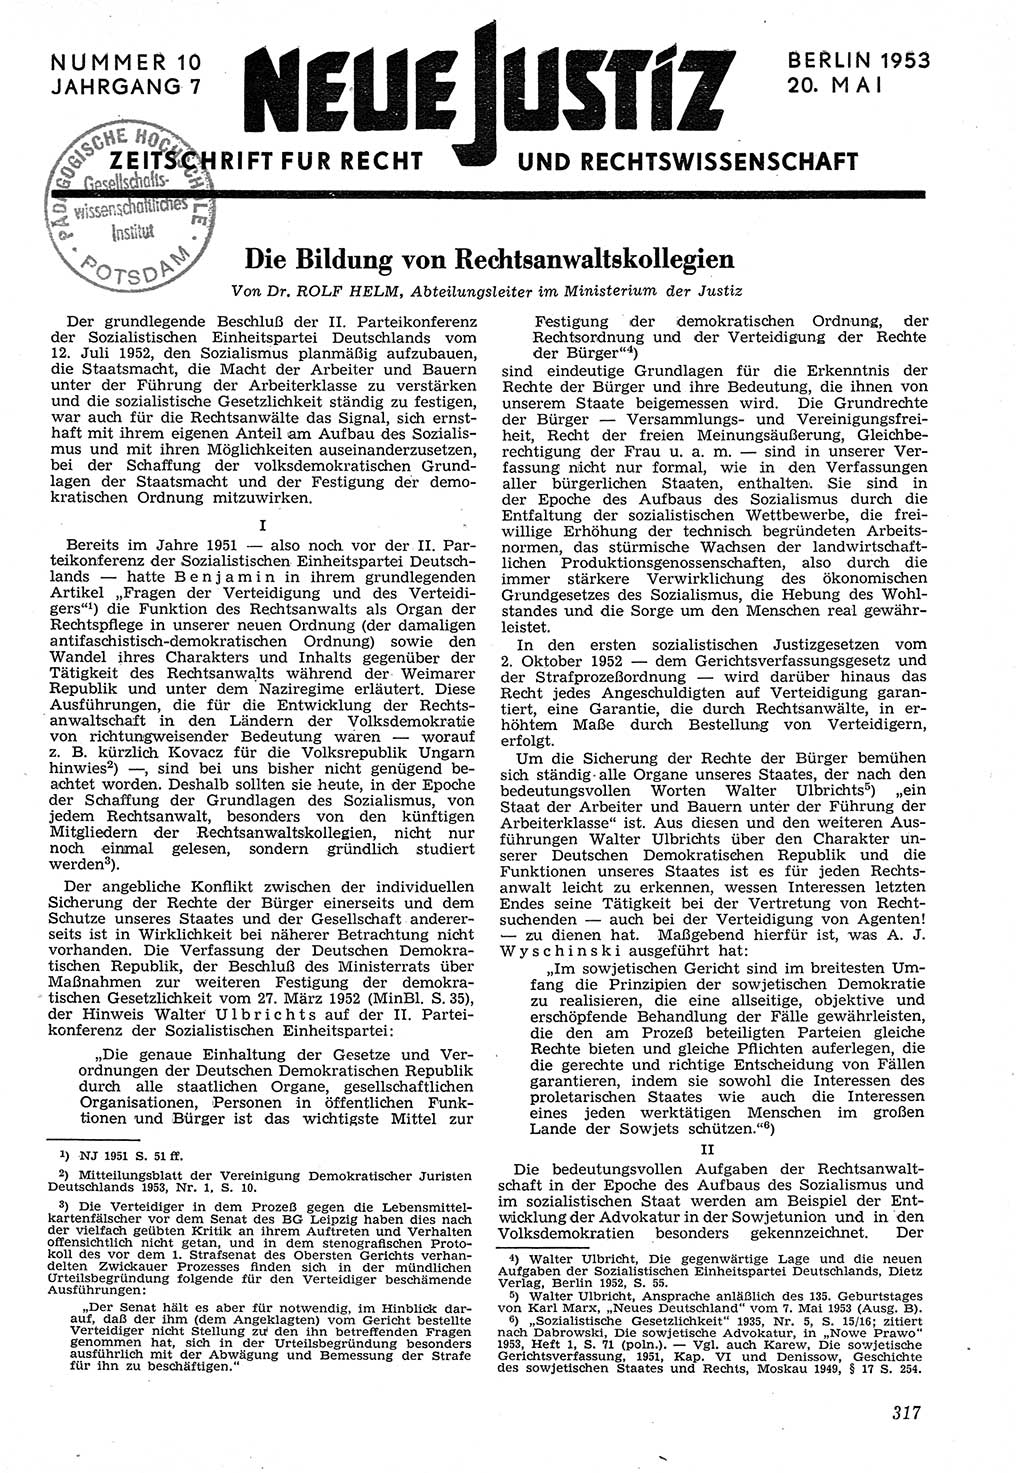 Neue Justiz (NJ), Zeitschrift für Recht und Rechtswissenschaft [Deutsche Demokratische Republik (DDR)], 7. Jahrgang 1953, Seite 317 (NJ DDR 1953, S. 317)